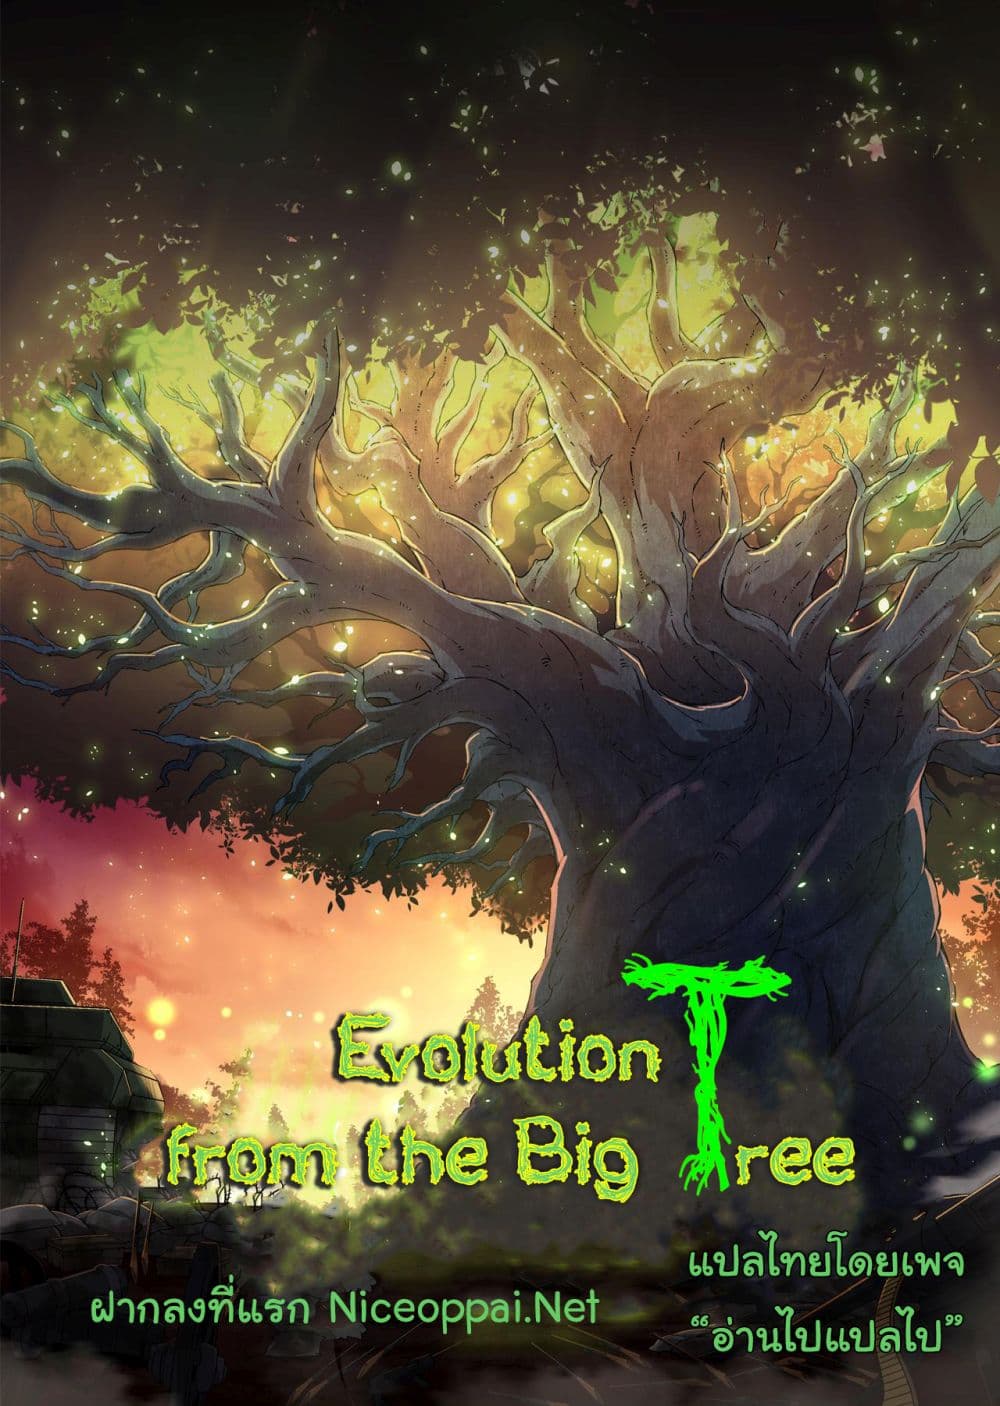 Evolution from the Big Tree Ã Â¸â€¢Ã Â¸Â­Ã Â¸â„¢Ã Â¸â€”Ã Â¸ÂµÃ Â¹Ë† 20 (1)